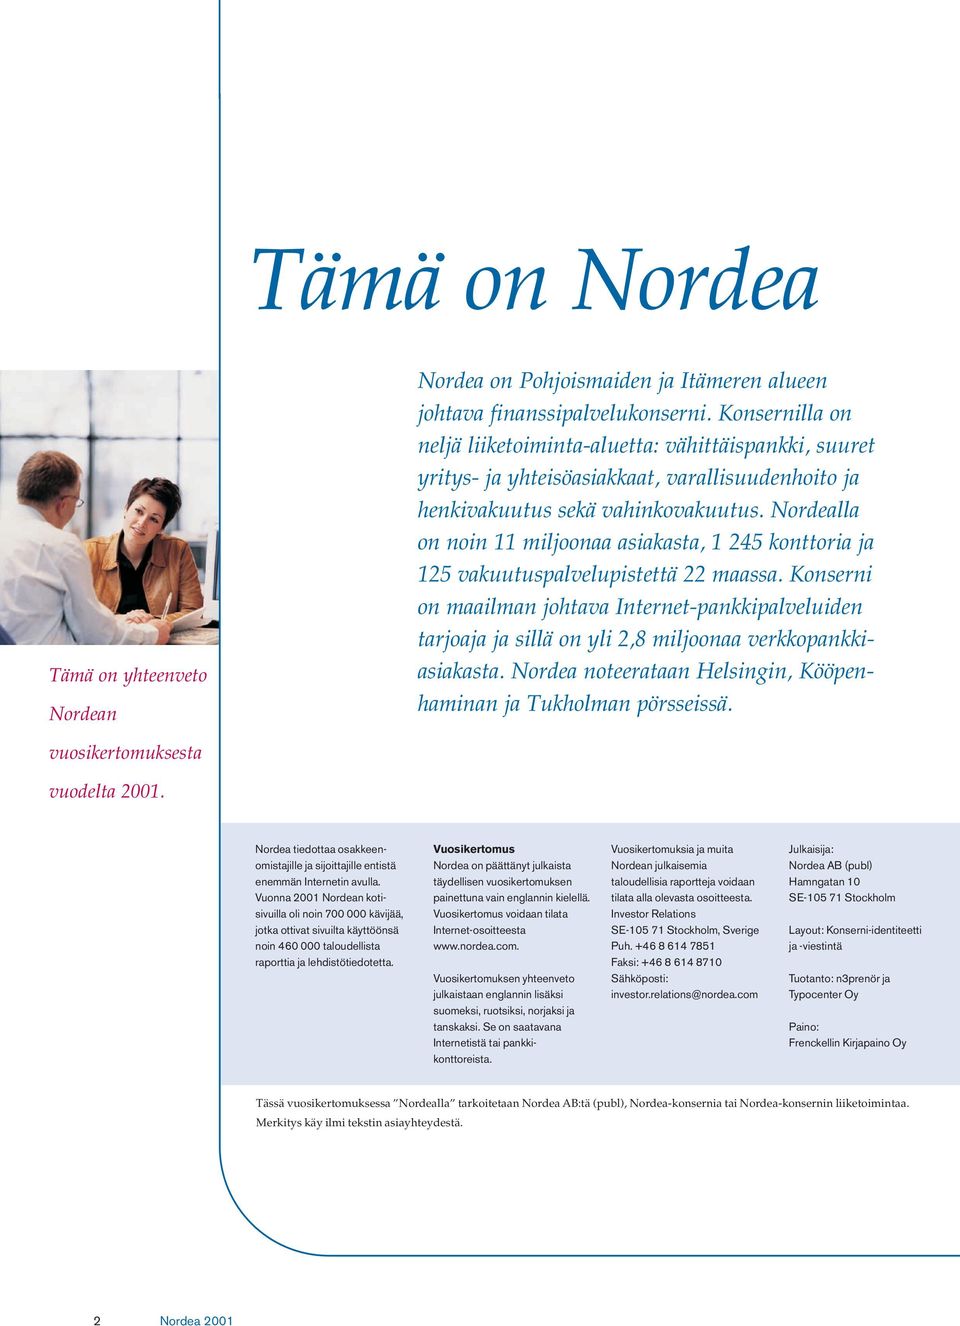 Nordealla on noin 11 miljoonaa asiakasta, 1 245 konttoria ja 125 vakuutuspalvelupistettä 22 maassa.